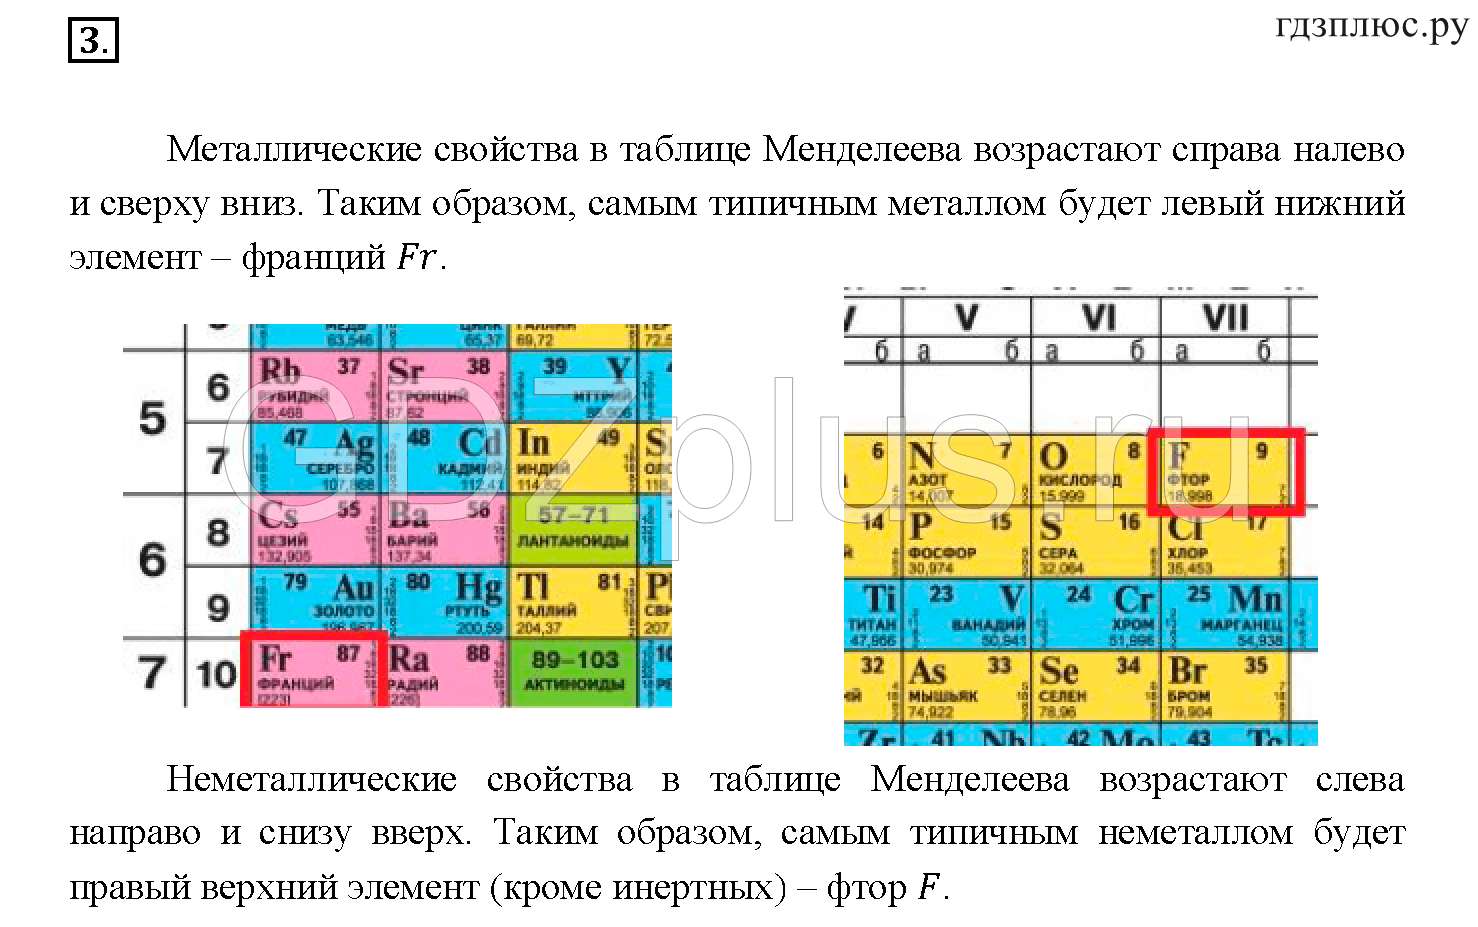 Неметаллические свойства o s. Усиление основных свойств в таблице Менделеева. Таблица металлических свойств химических элементов. Порядок металлических свойств элементов. Металлические свойства элементов таблица.